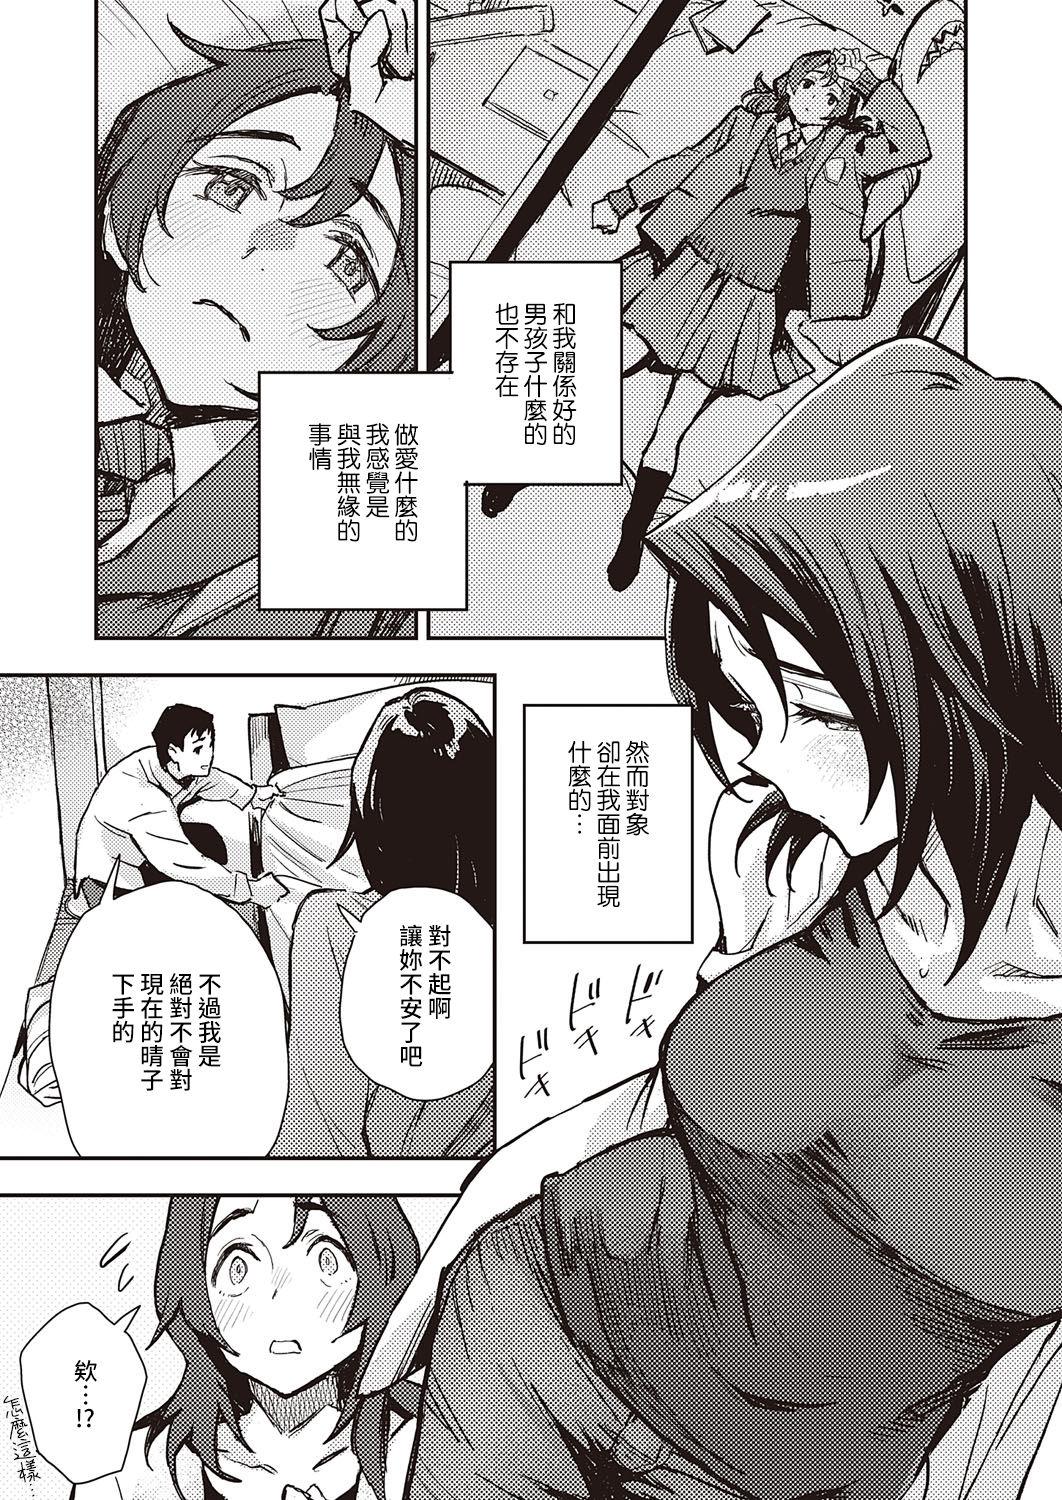 Spying Haruko-san no Naka Doggystyle - Page 9